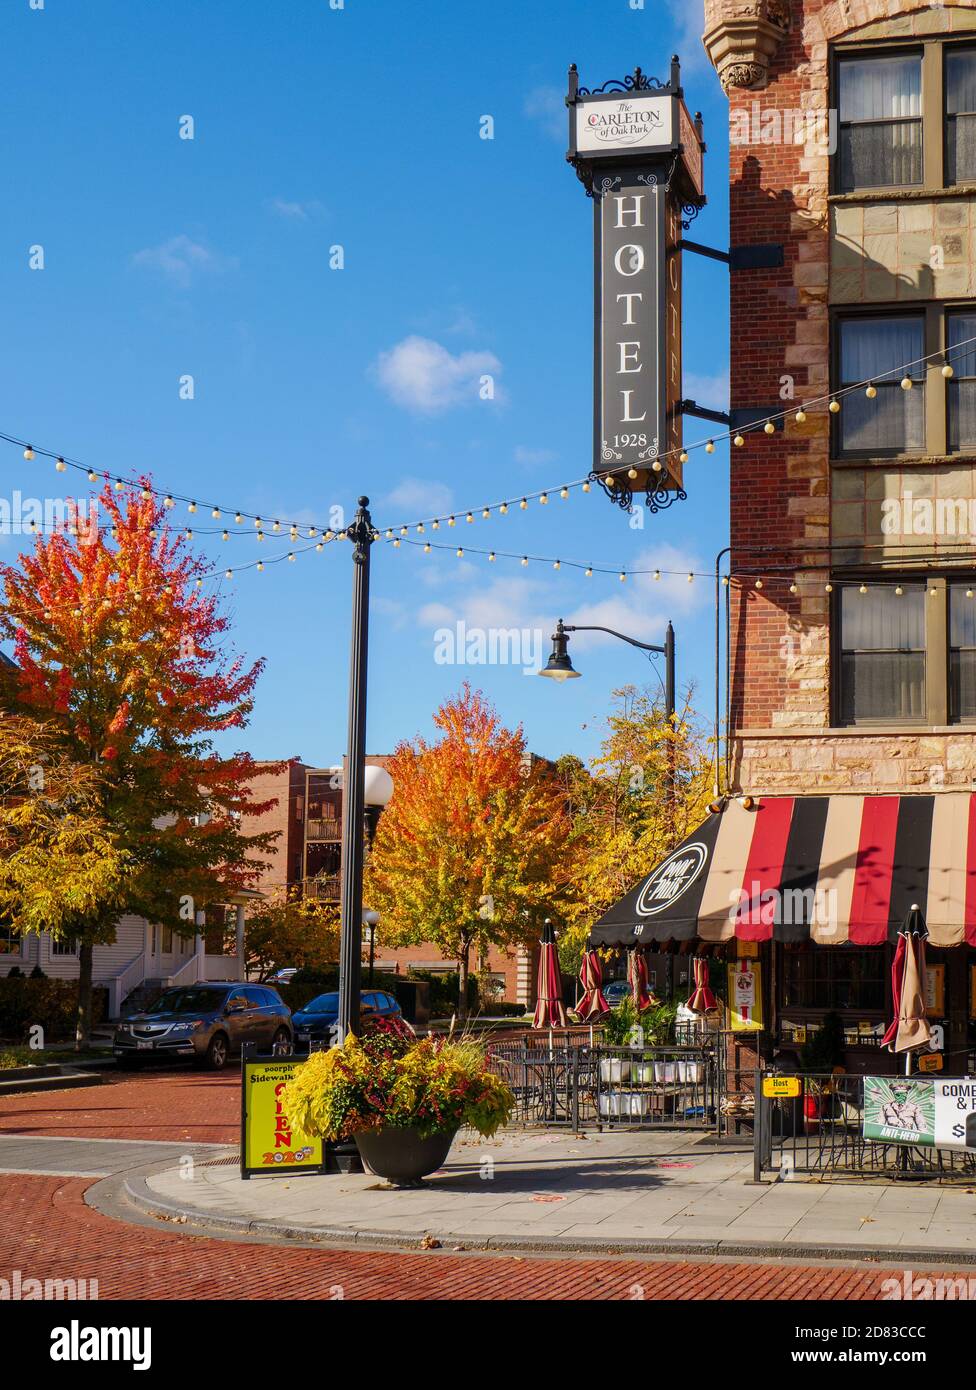 L'hôtel Carleton et le restaurant Poor Phil's en automne. Oak Park, Illinois  Photo Stock - Alamy